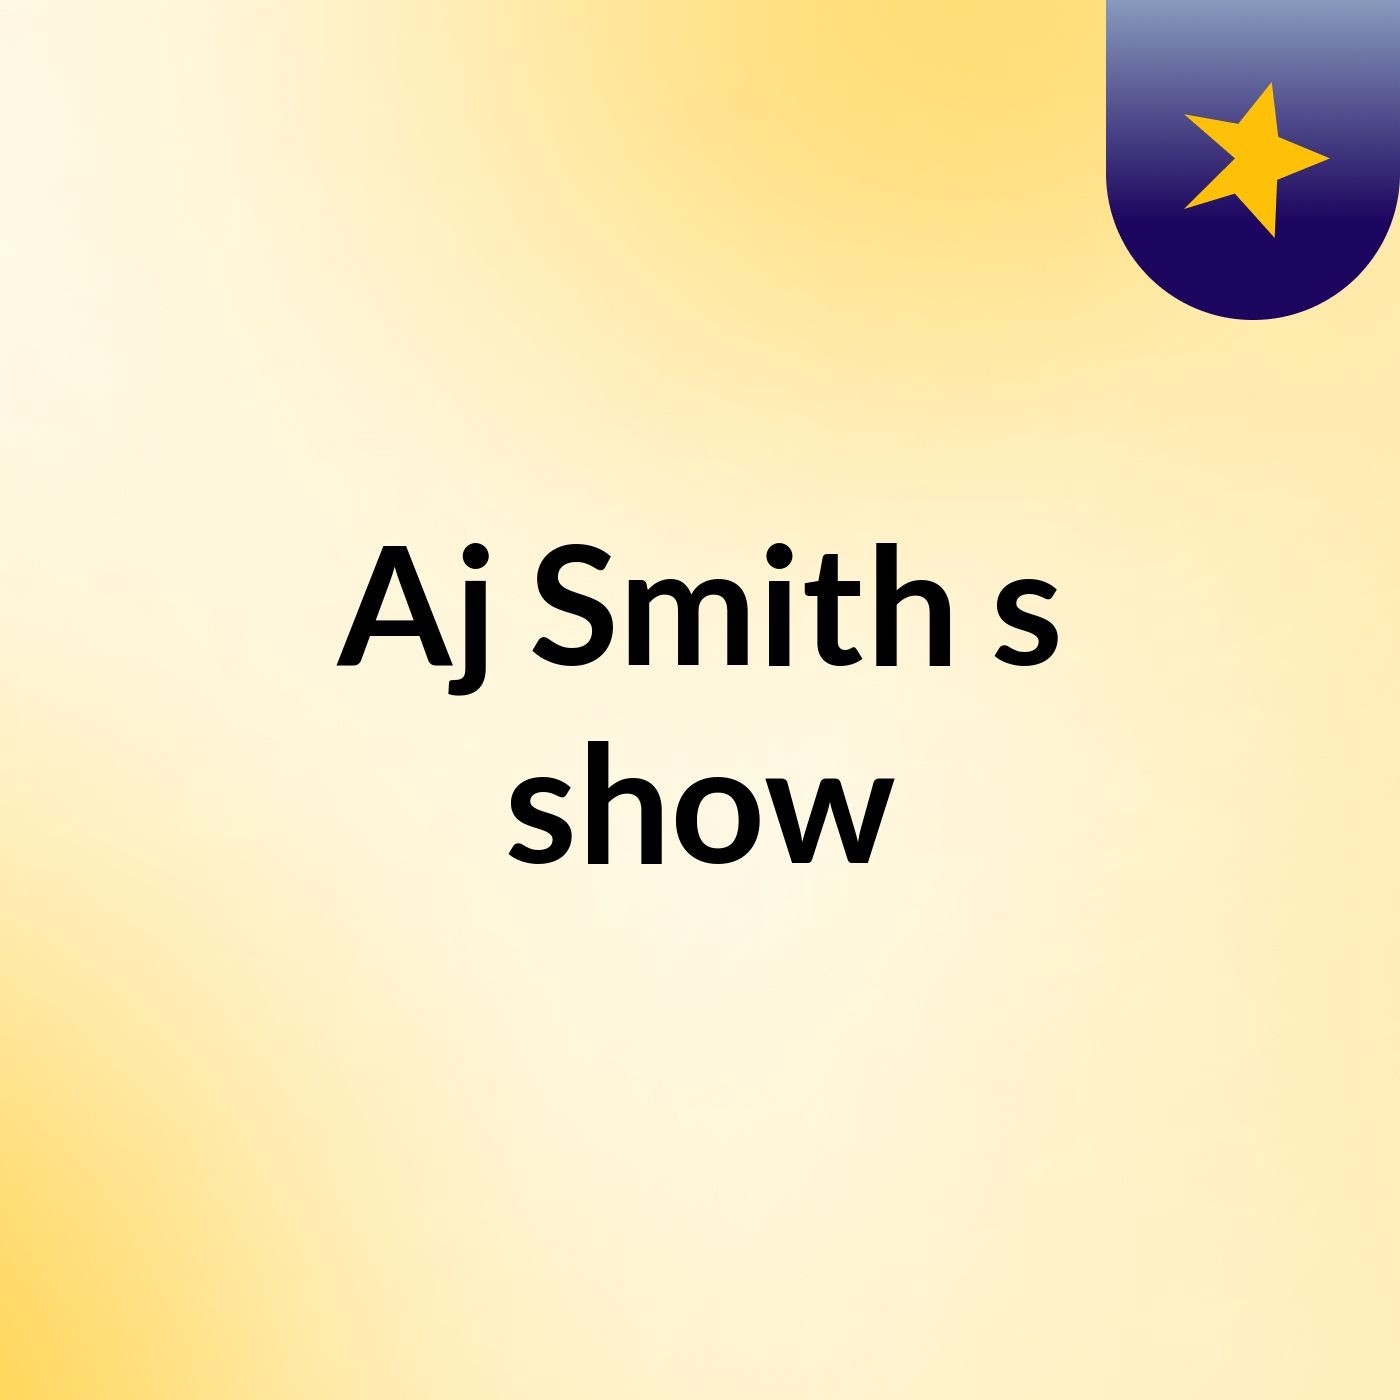 Episode 5 - Aj Smith's show